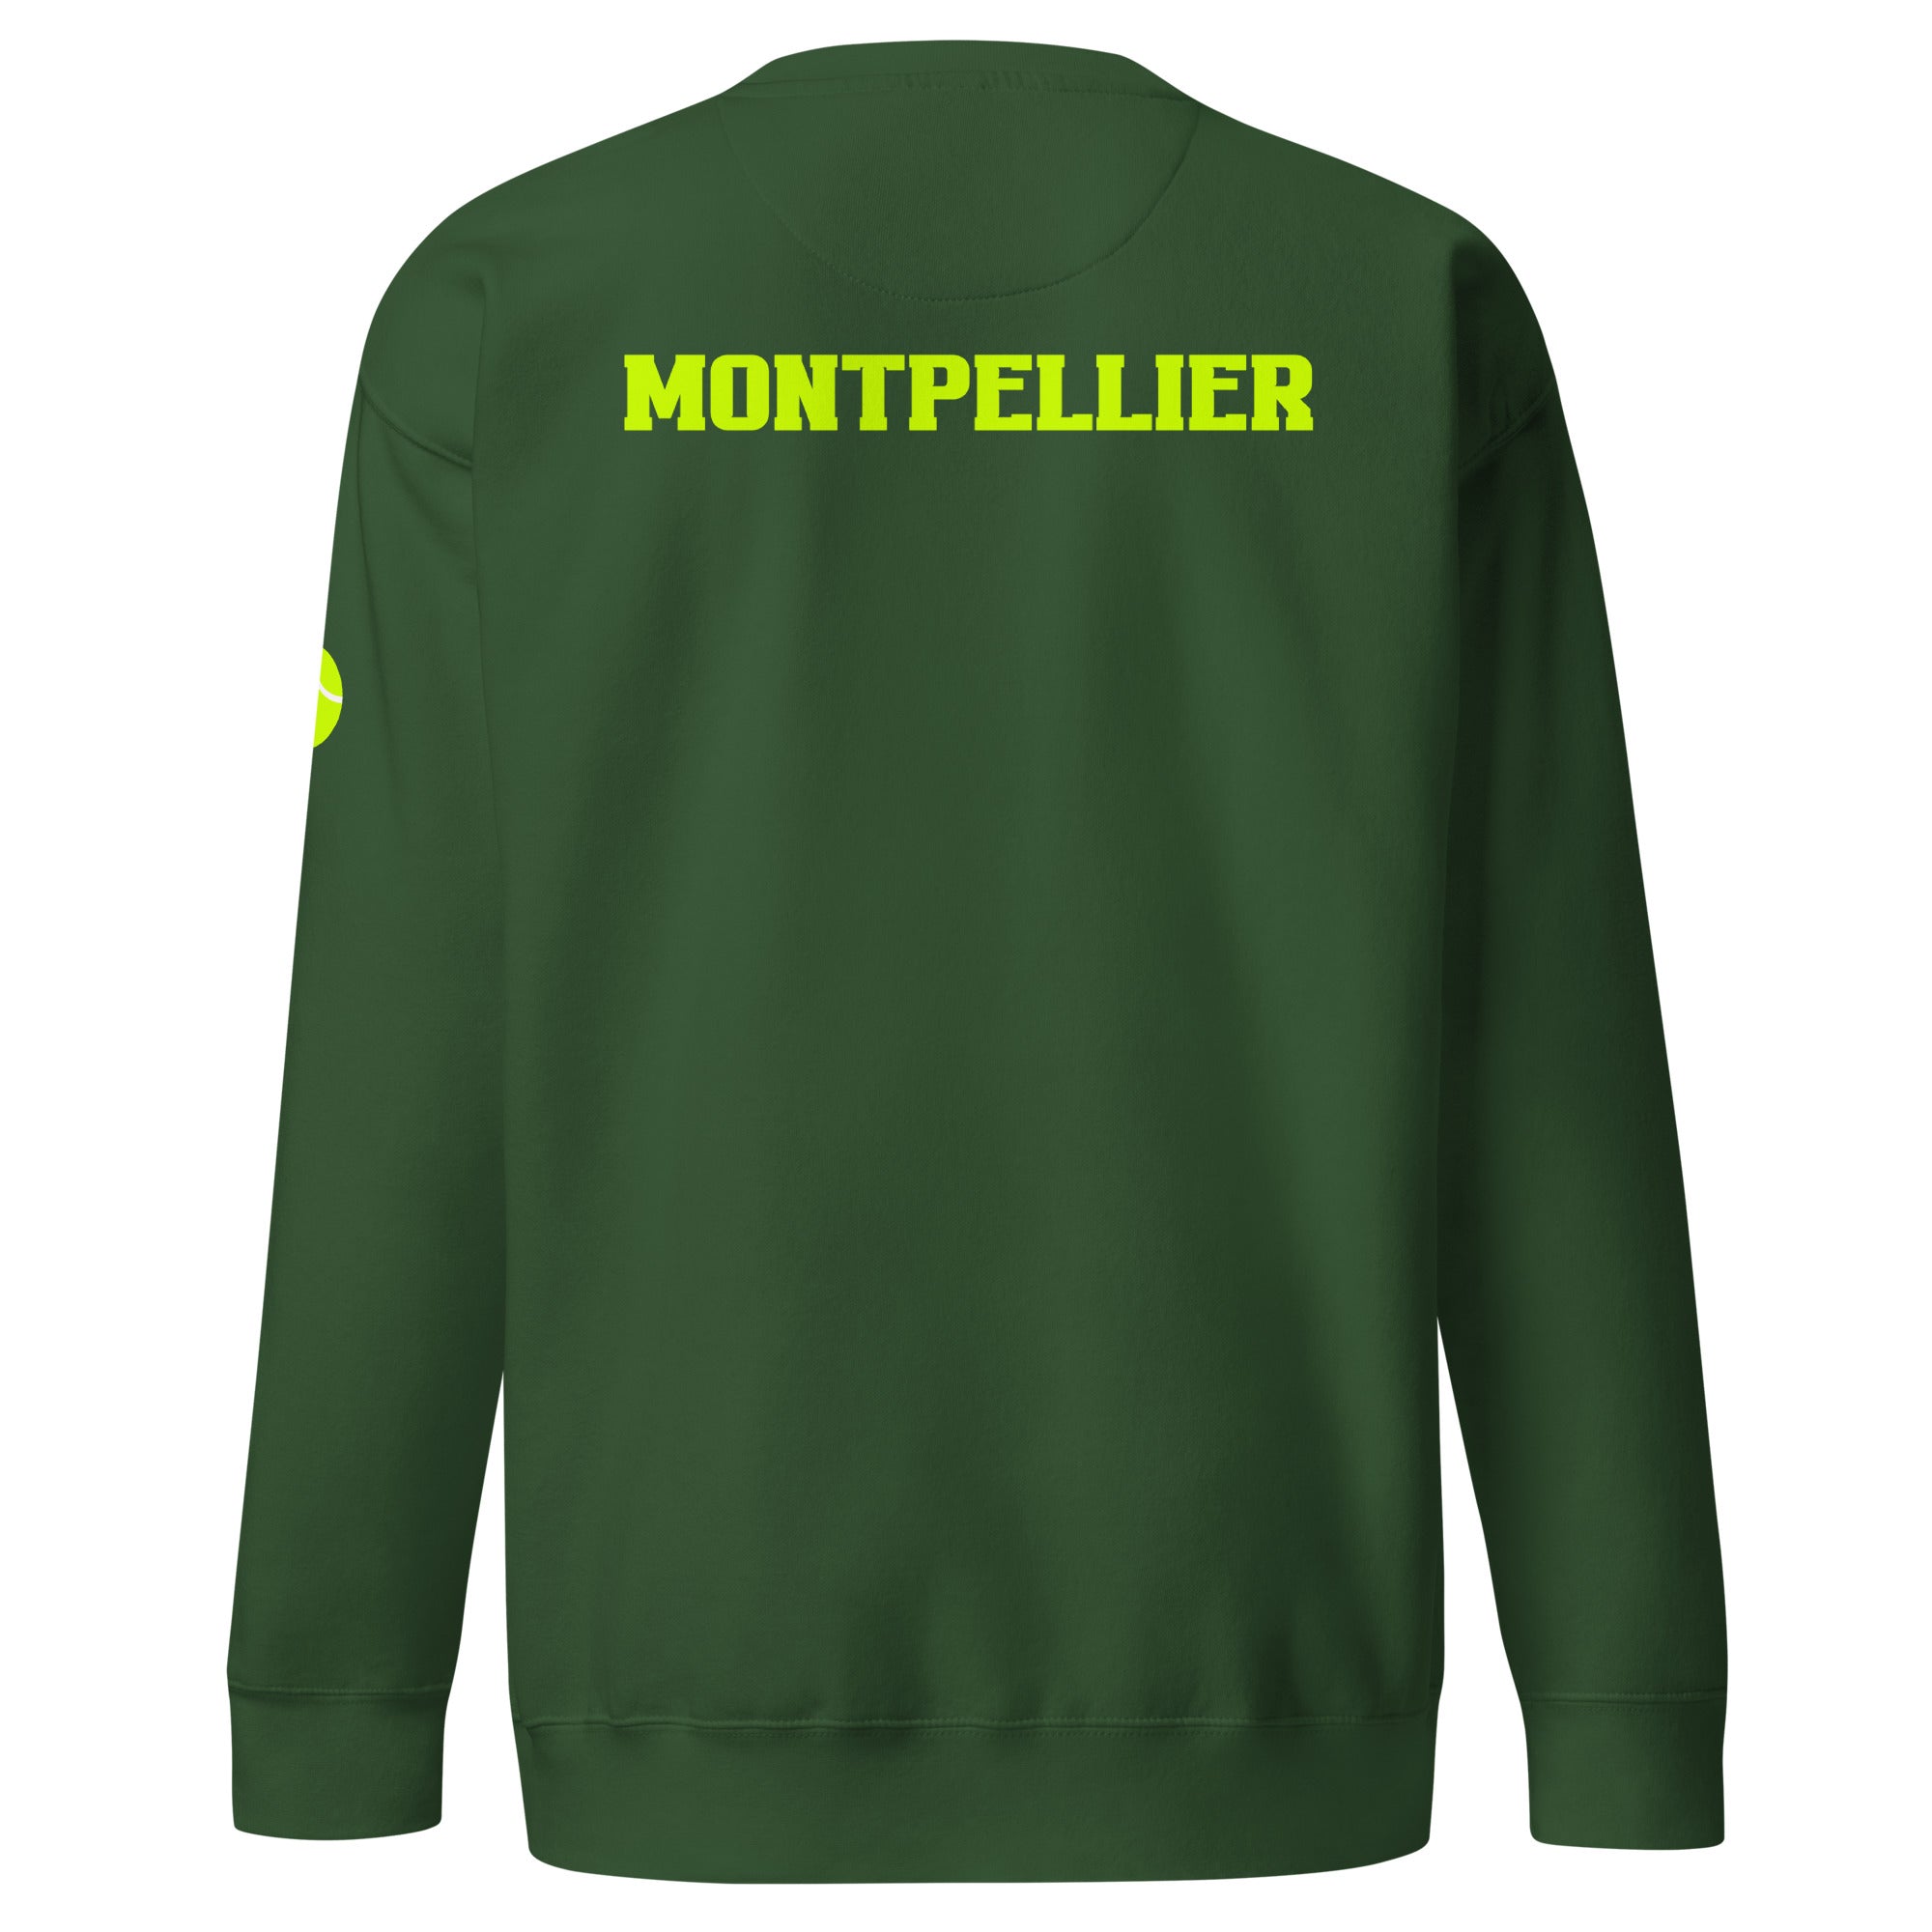 Unisex Premium Sweatshirt - Tennis Masters Montpellier - GRAPHIC T-SHIRTS